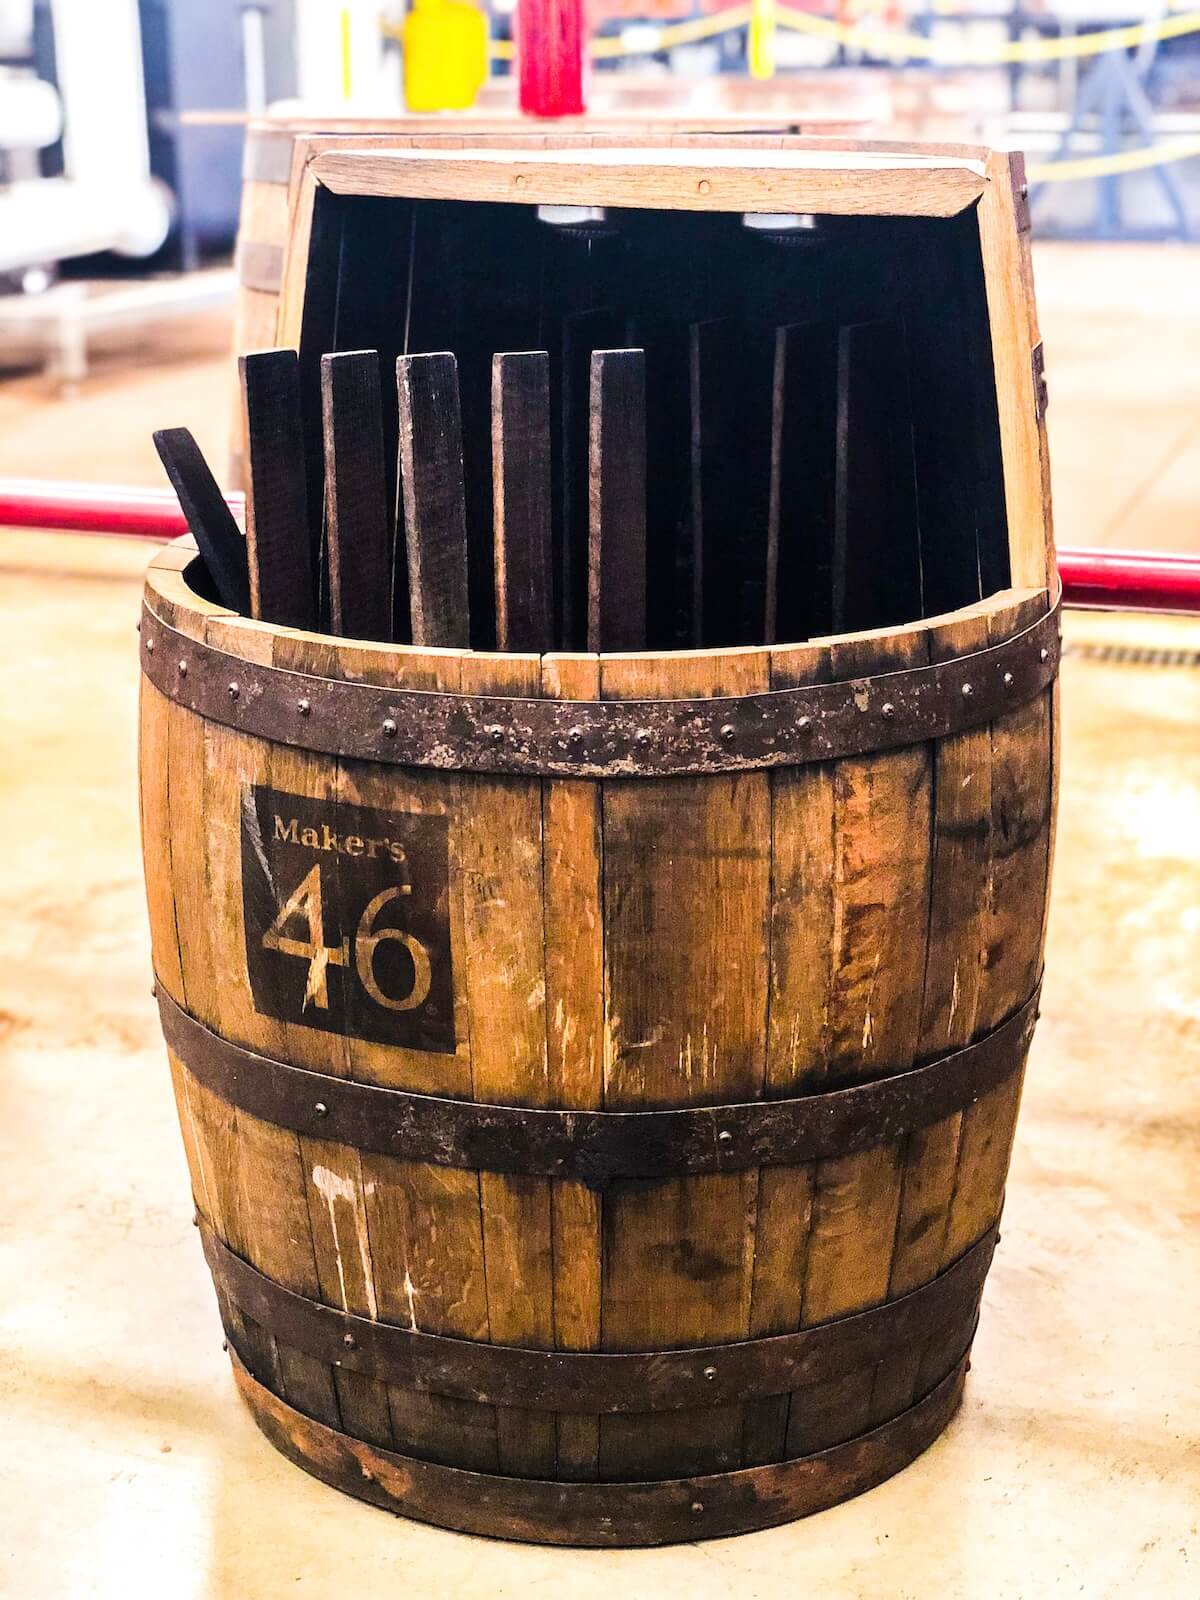 Maker's mark 46 bourbon barrel filled with charred oak staves